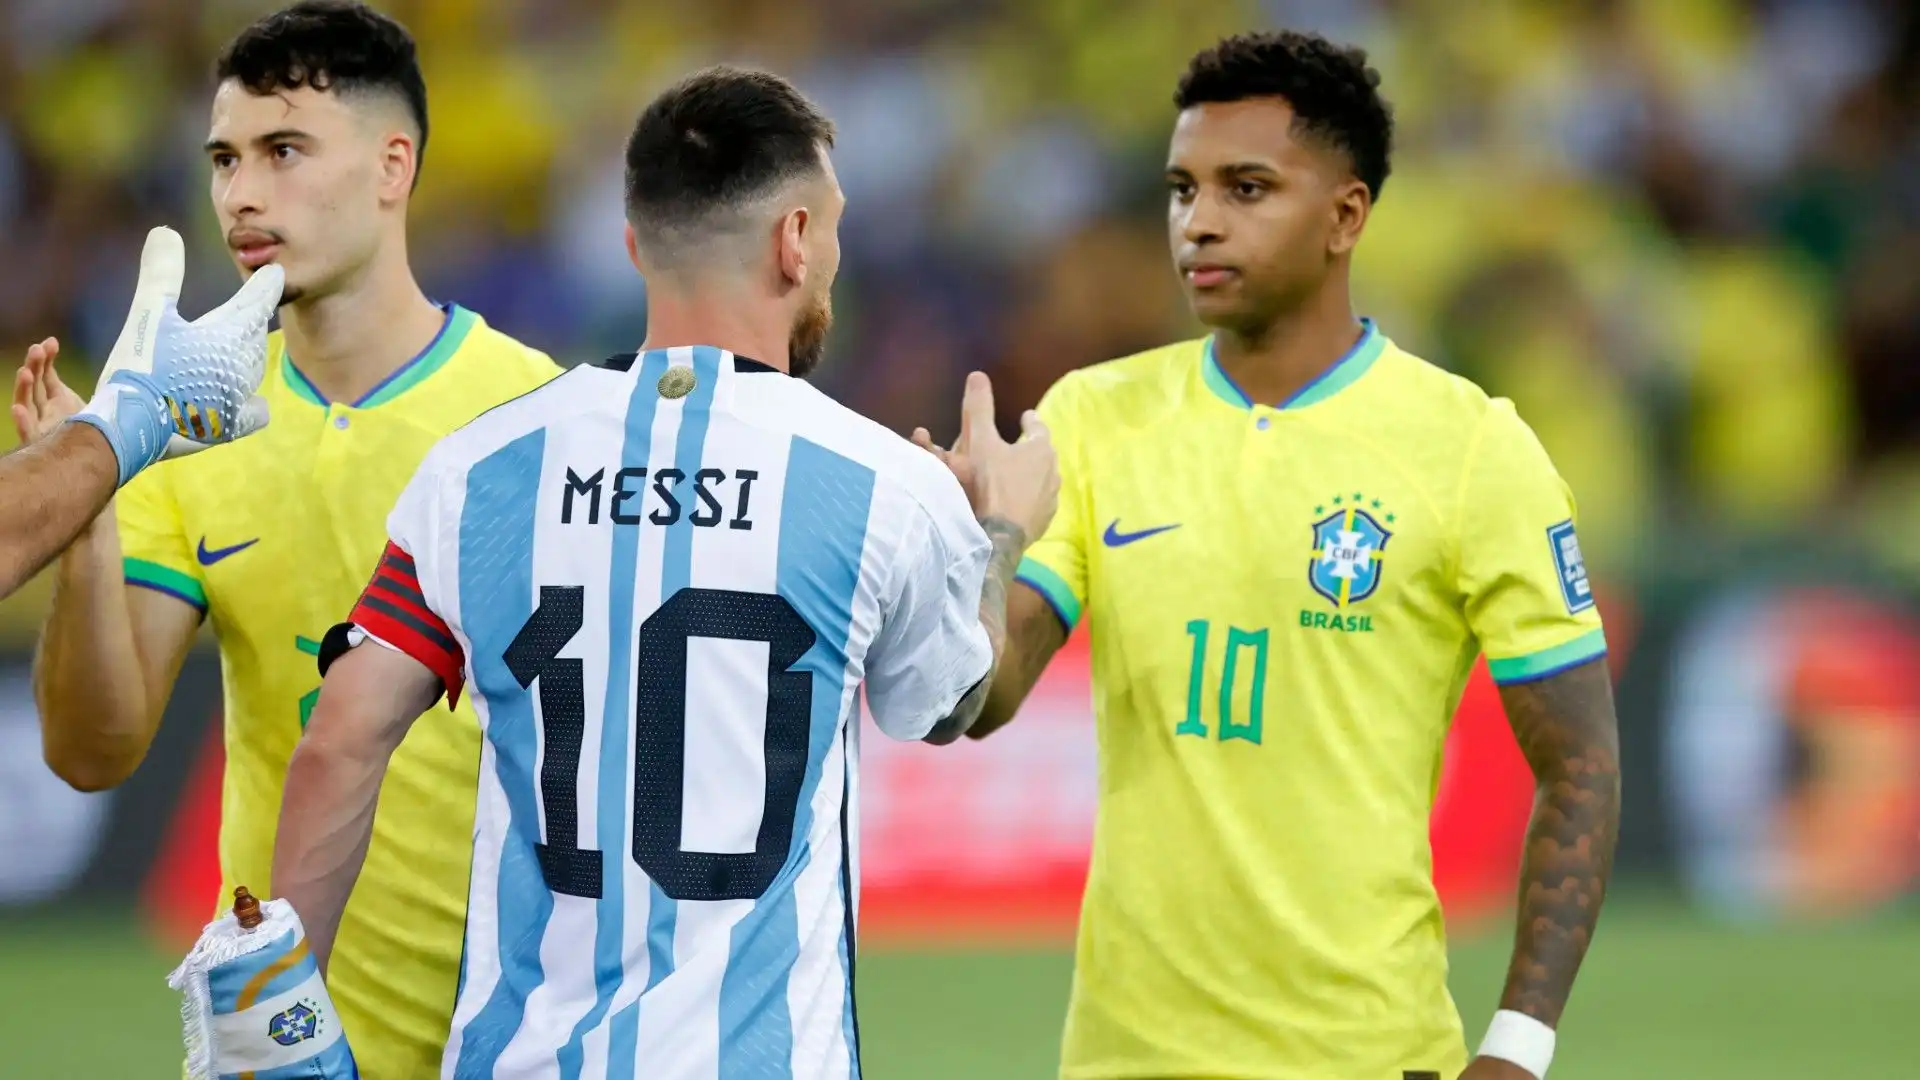 Probabilmente il campione brasiliano ha fatto qualcosa che a Messi non è piaciuto